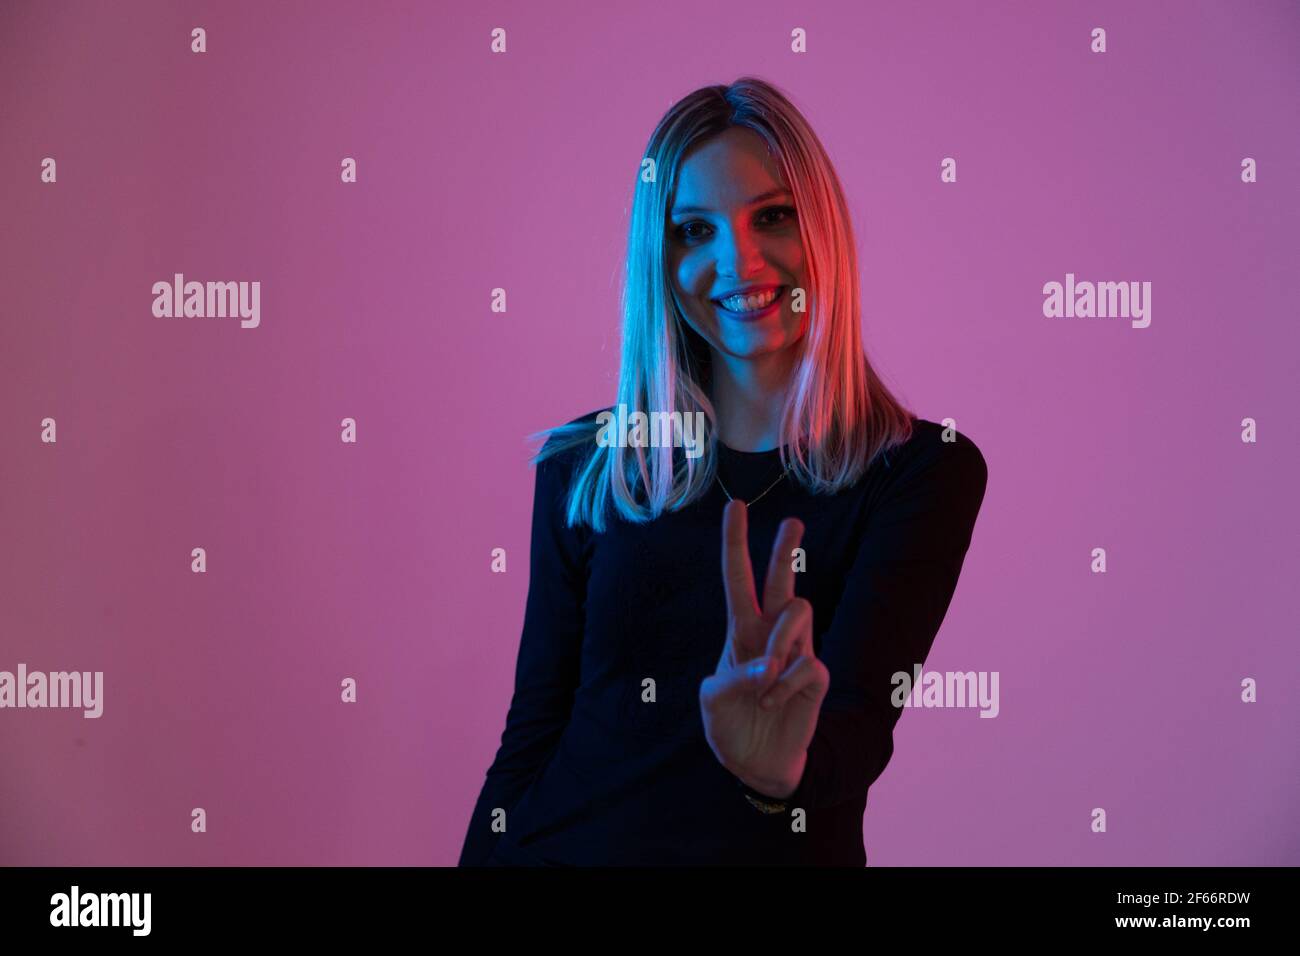 Junge blonde Frau von Neonlicht beleuchtet macht den Sieg unterschreiben Sie mit ihrer Hand Stockfoto